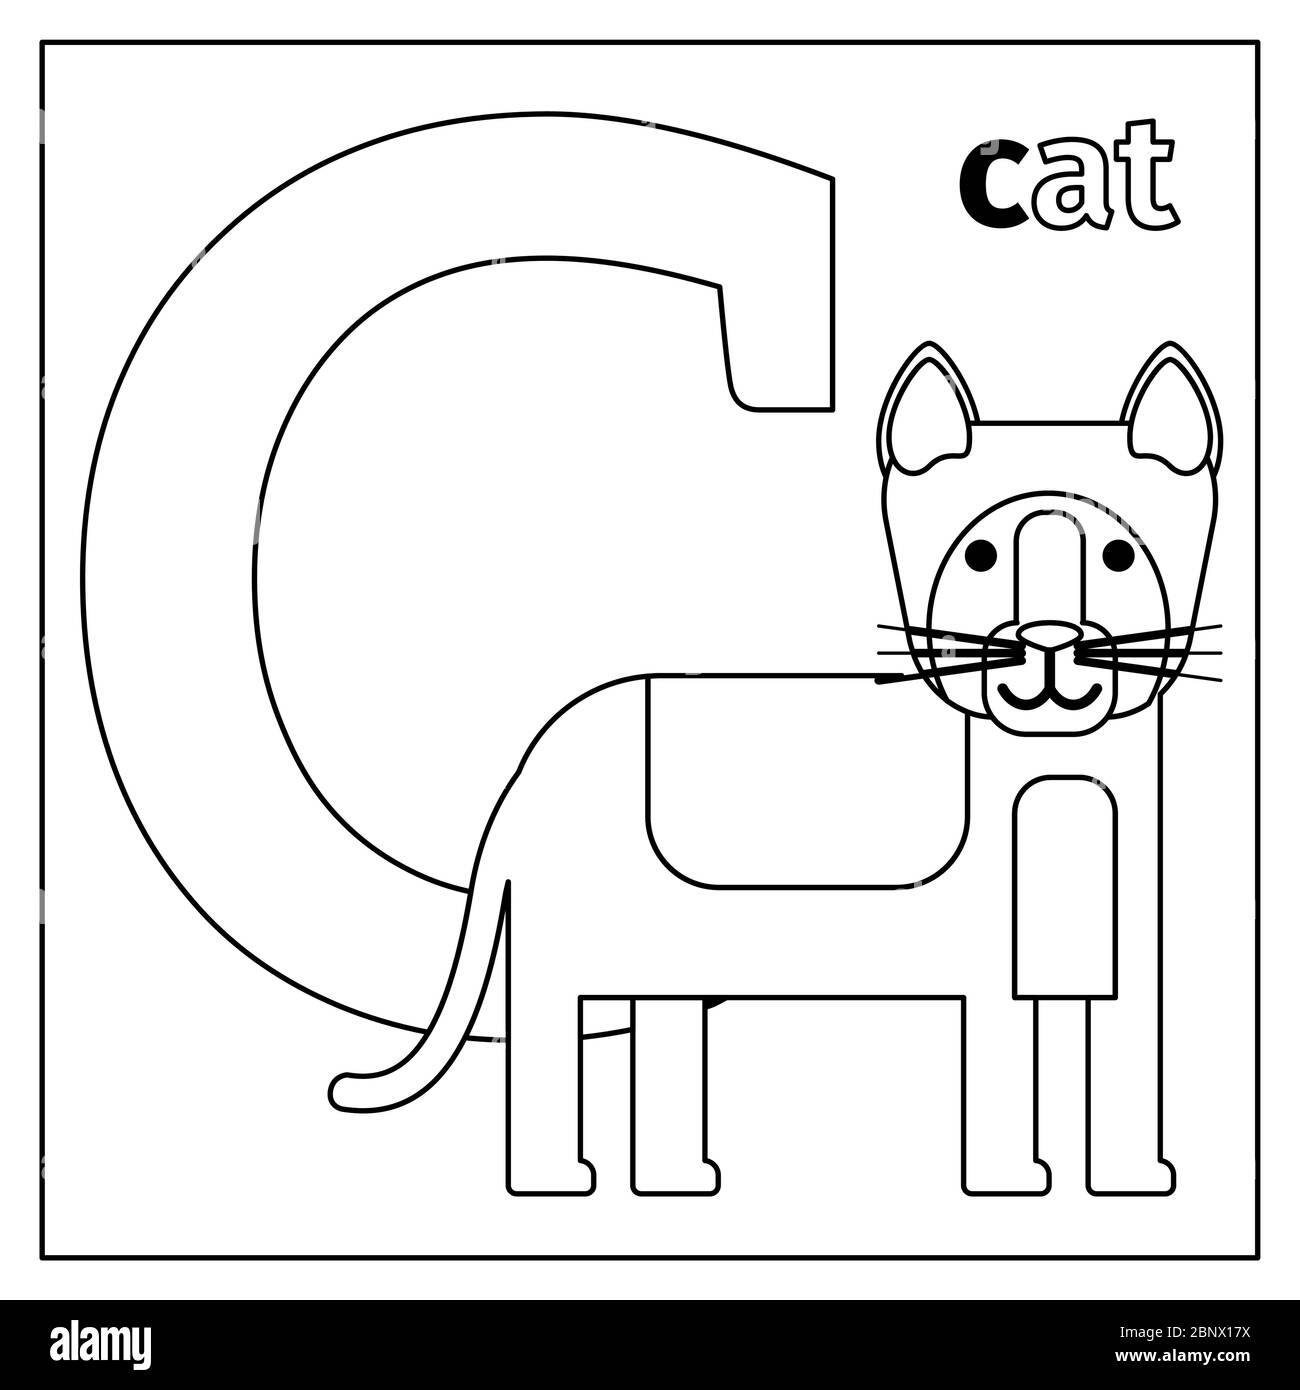 Page de coloriage ou carte pour enfants avec l'alphabet du zoo des animaux anglais. Illustration vectorielle Cat, lettre C. Illustration de Vecteur